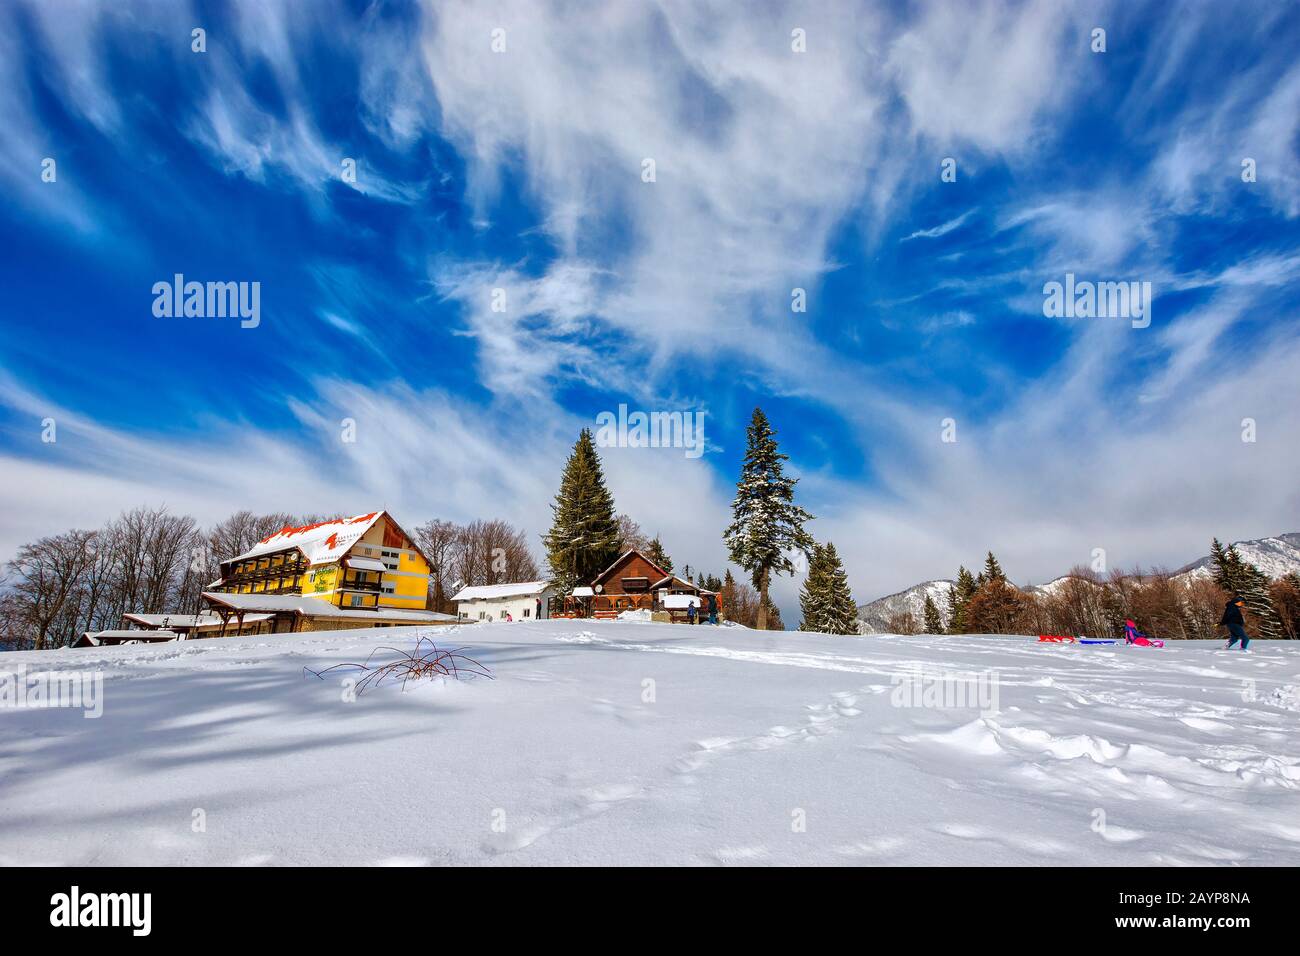 Ambiance incroyable au chalet Trei Brazi en hiver à 1120 mètres d'altitude et à 5 km de la station de ski Predeal, vallée de Prahova, Roumanie Banque D'Images